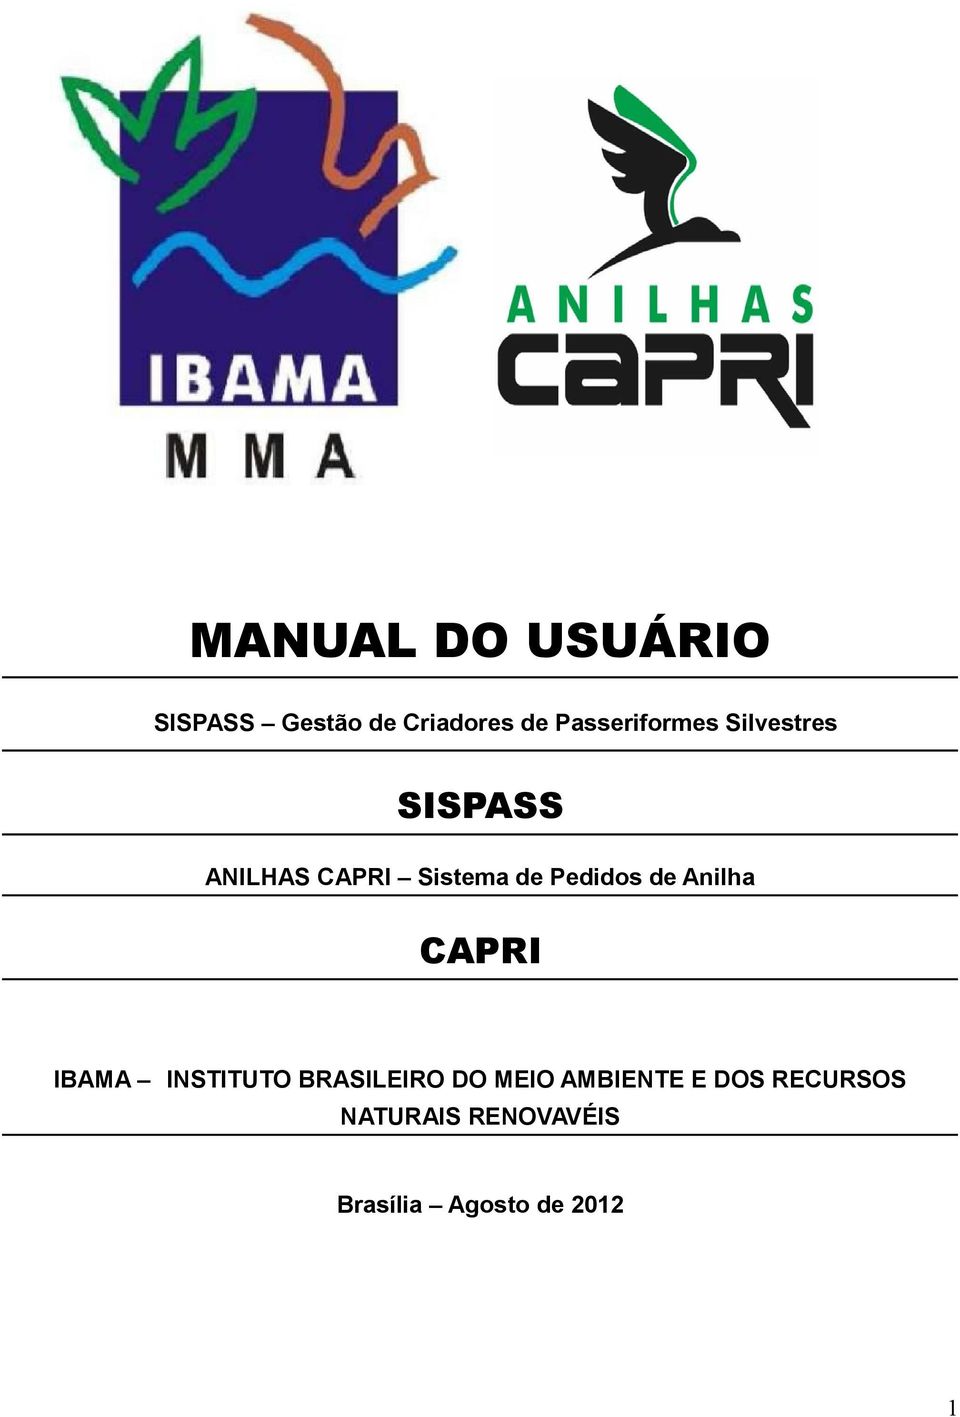 Pedidos de Anilha CAPRI IBAMA INSTITUTO BRASILEIRO DO MEIO